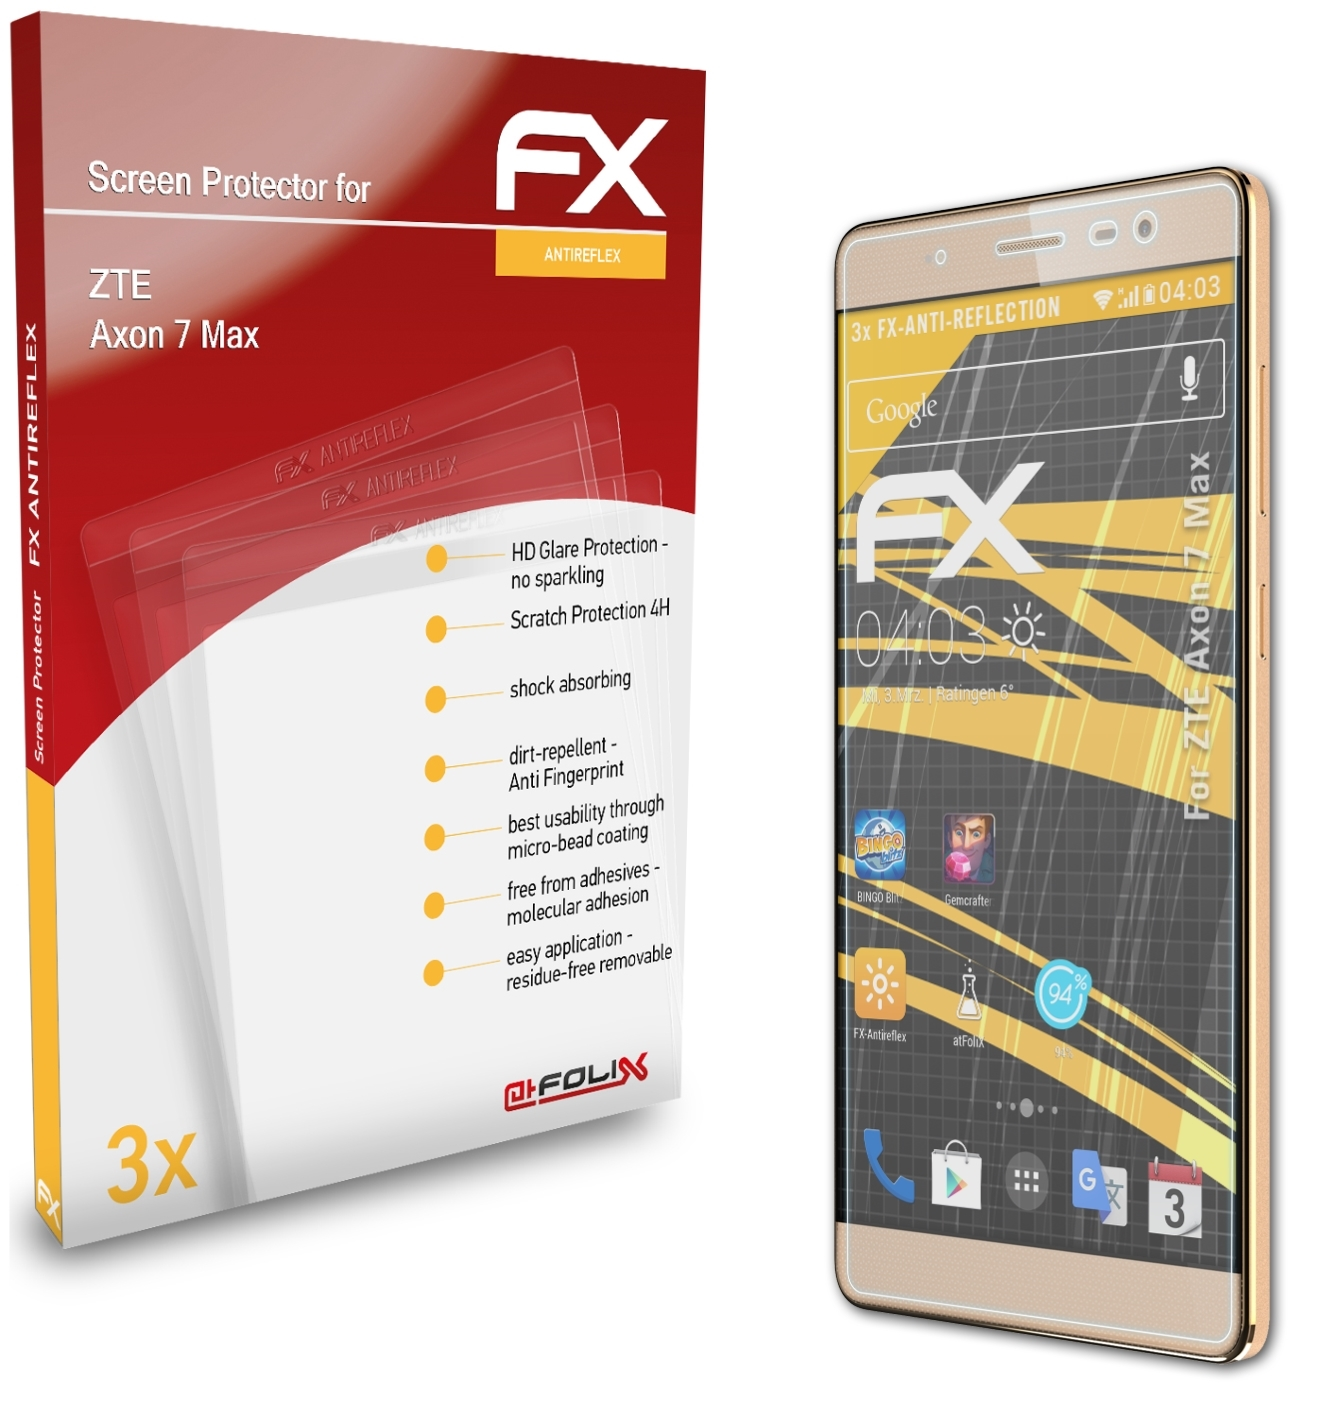 ATFOLIX 3x Max) 7 ZTE FX-Antireflex Axon Displayschutz(für